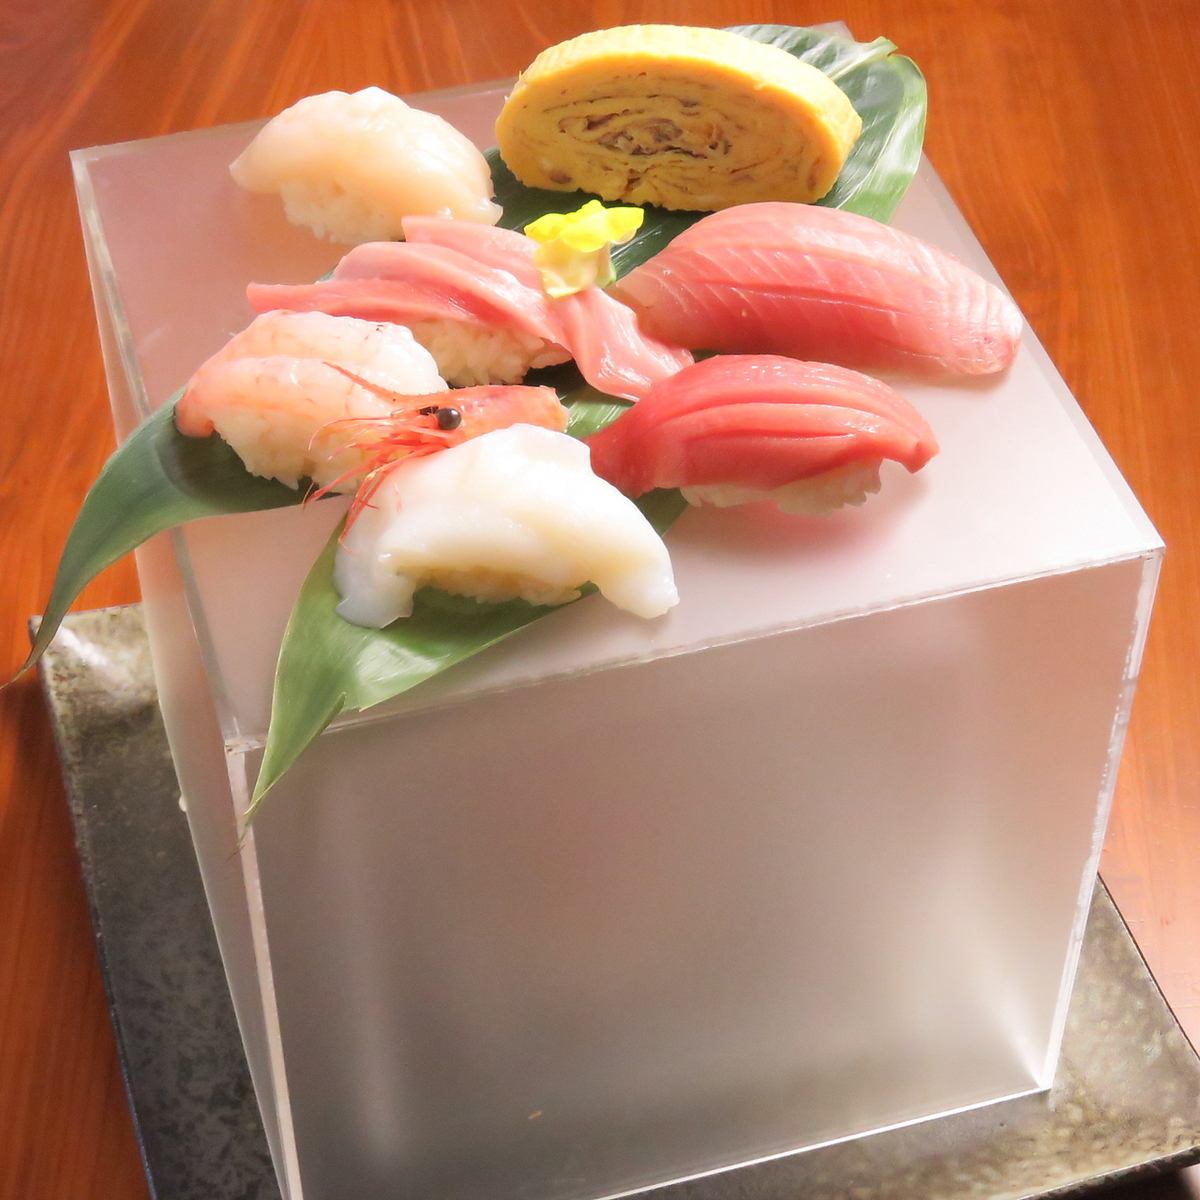 非常適合慶祝活動的壽司盒。可在周年紀念套餐中使用♪